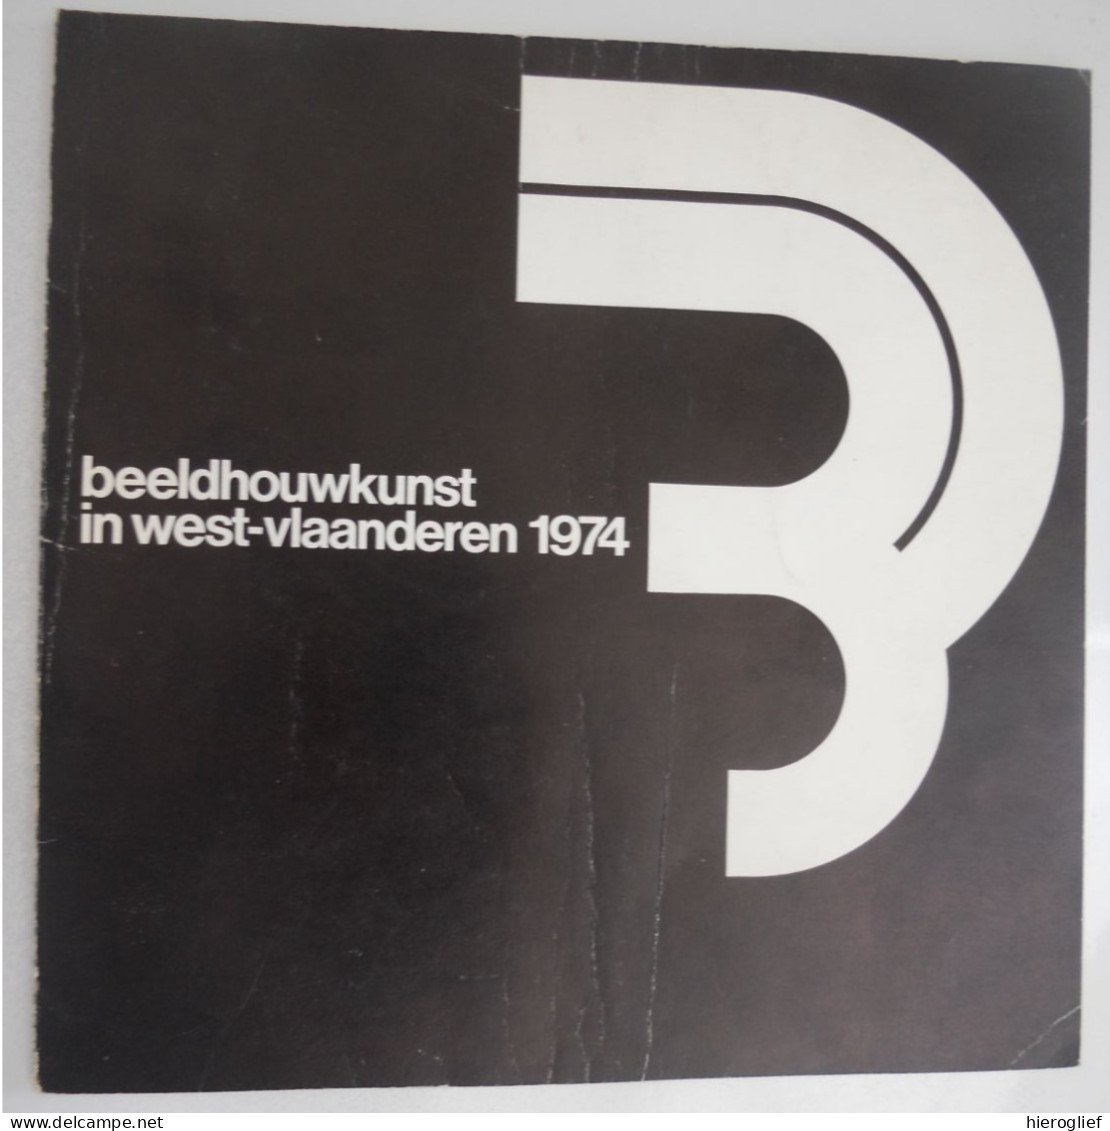 Beeldhouwkunst In West-vlaanderen 1974 - Tentoonstelling Oostkamp Brugge Taeckens Depuydt Spilliaert Vandroemme Verduyn - Geschichte